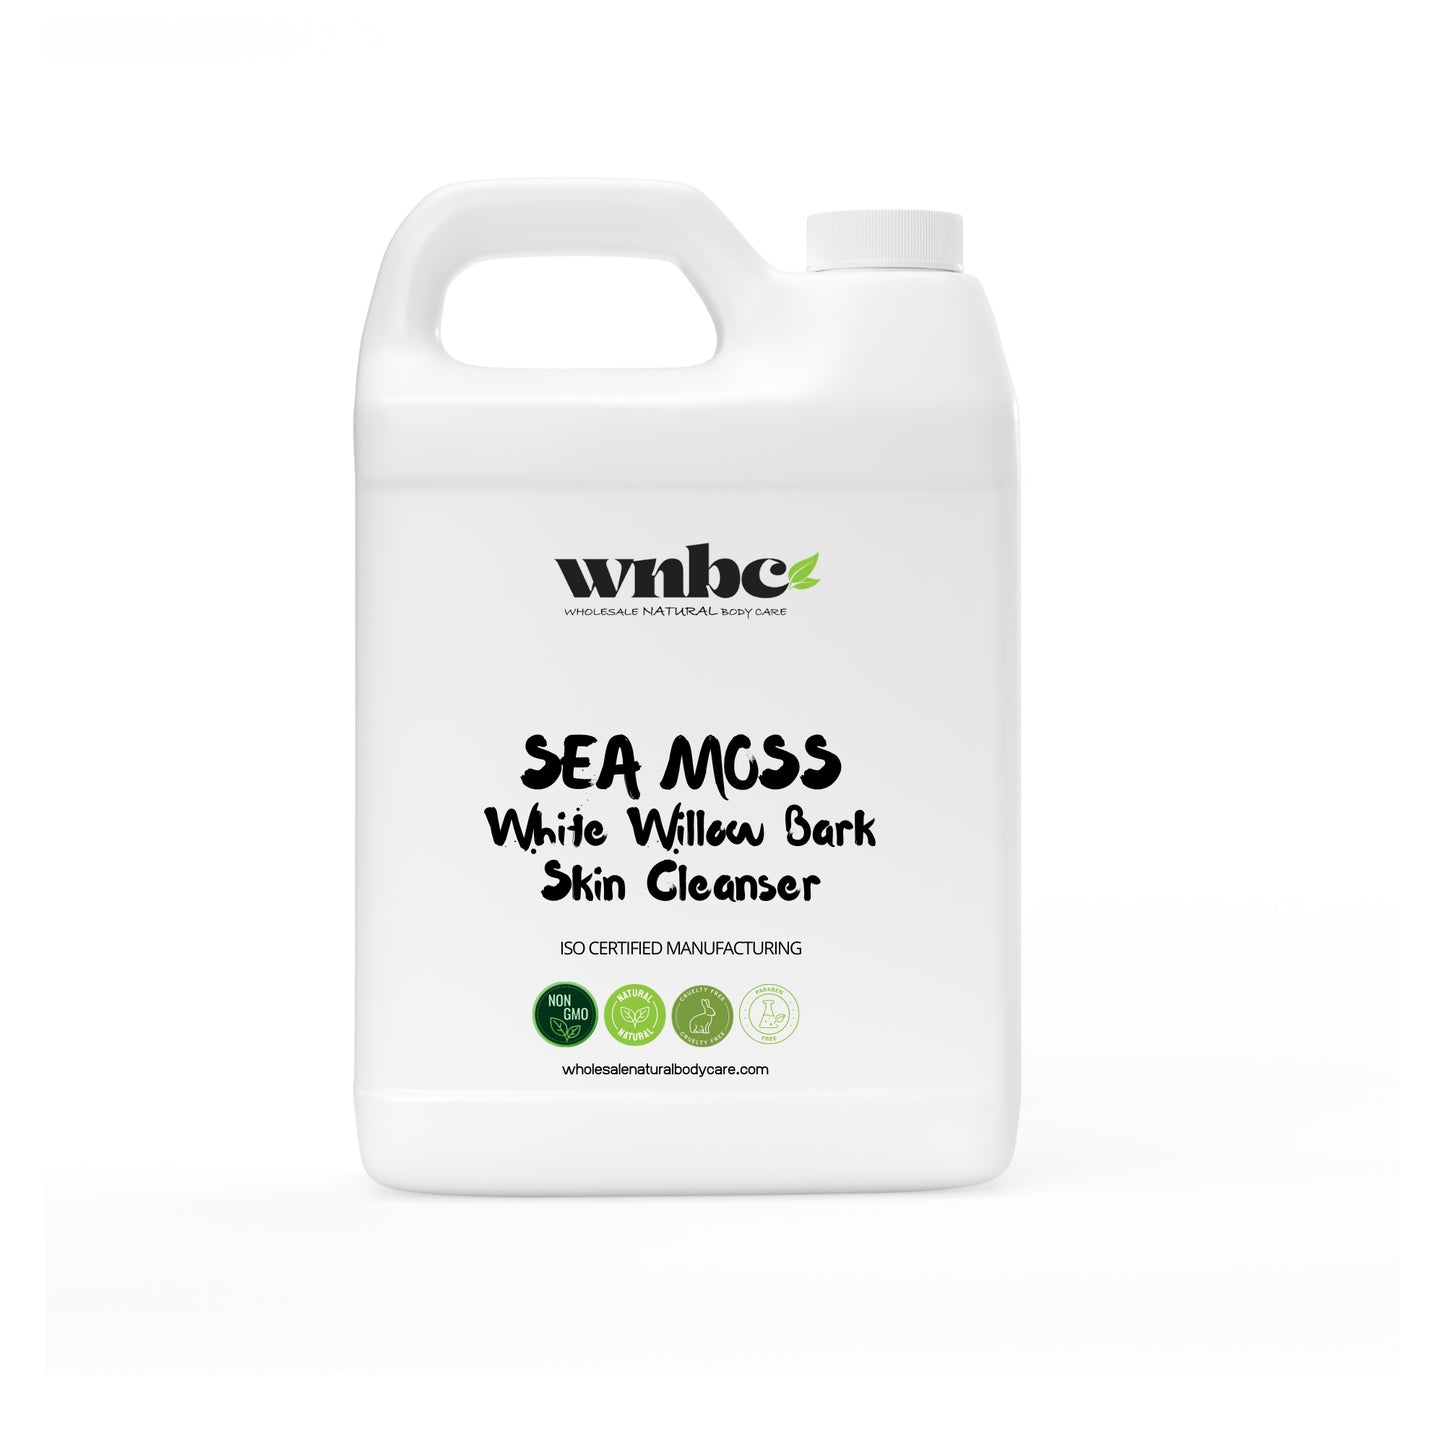 Sea Moss + White Willow Bark Skin Cleanser